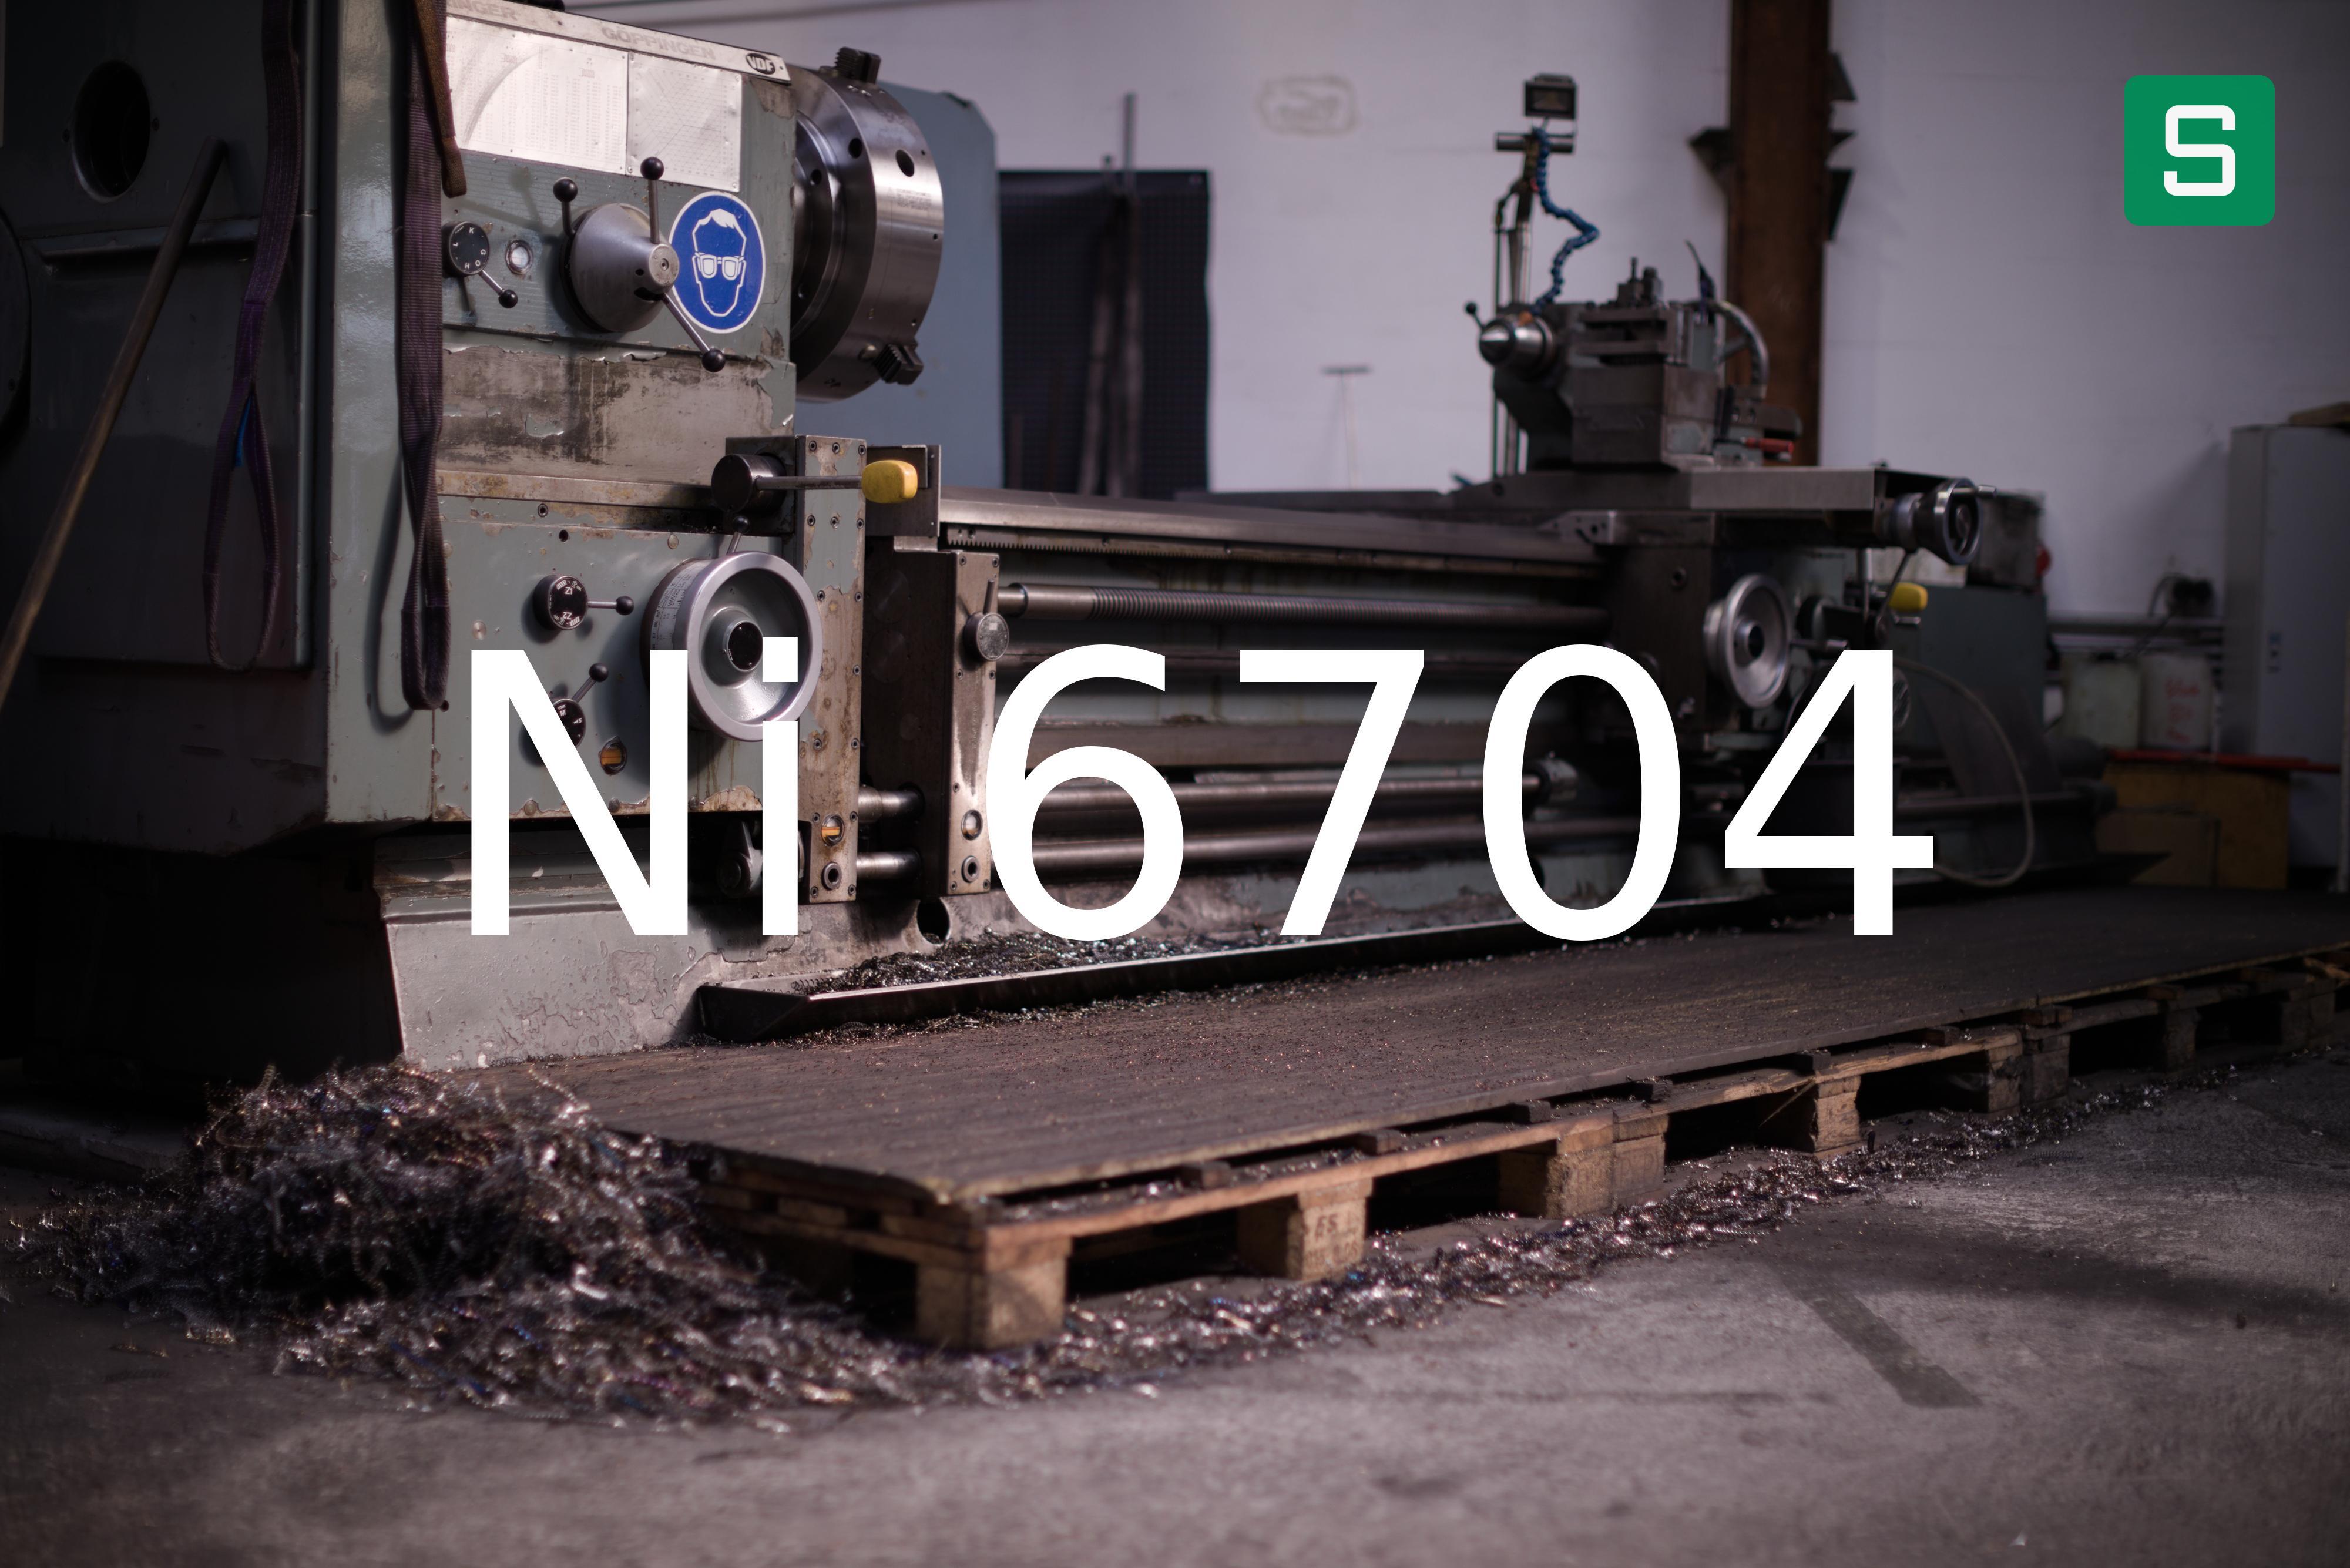 Steel Material: Ni 6704